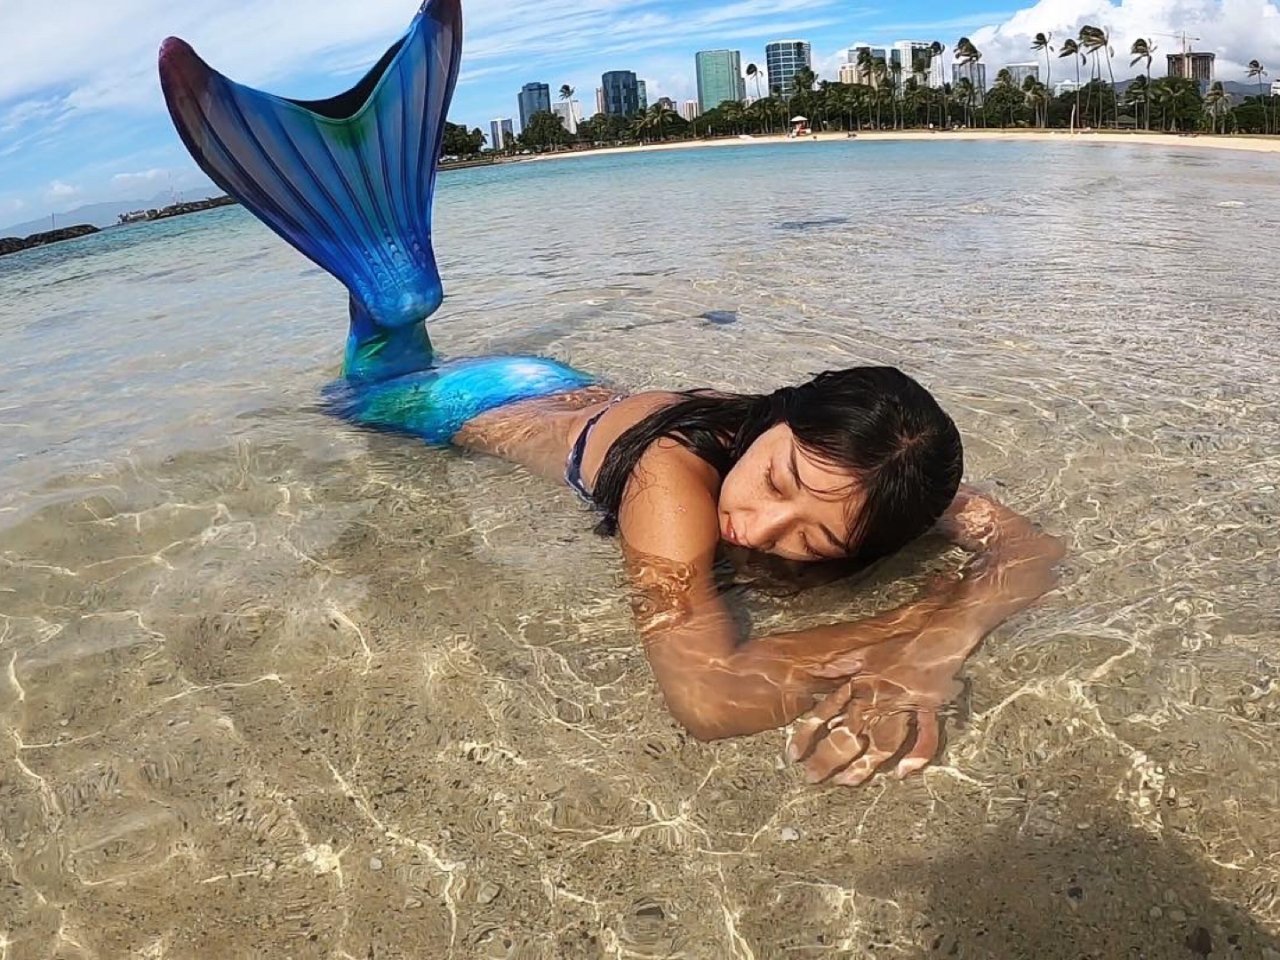 Medmaid Republic,Mermaid Republic | Mermaid tours and photo shoots Honolulu, HI